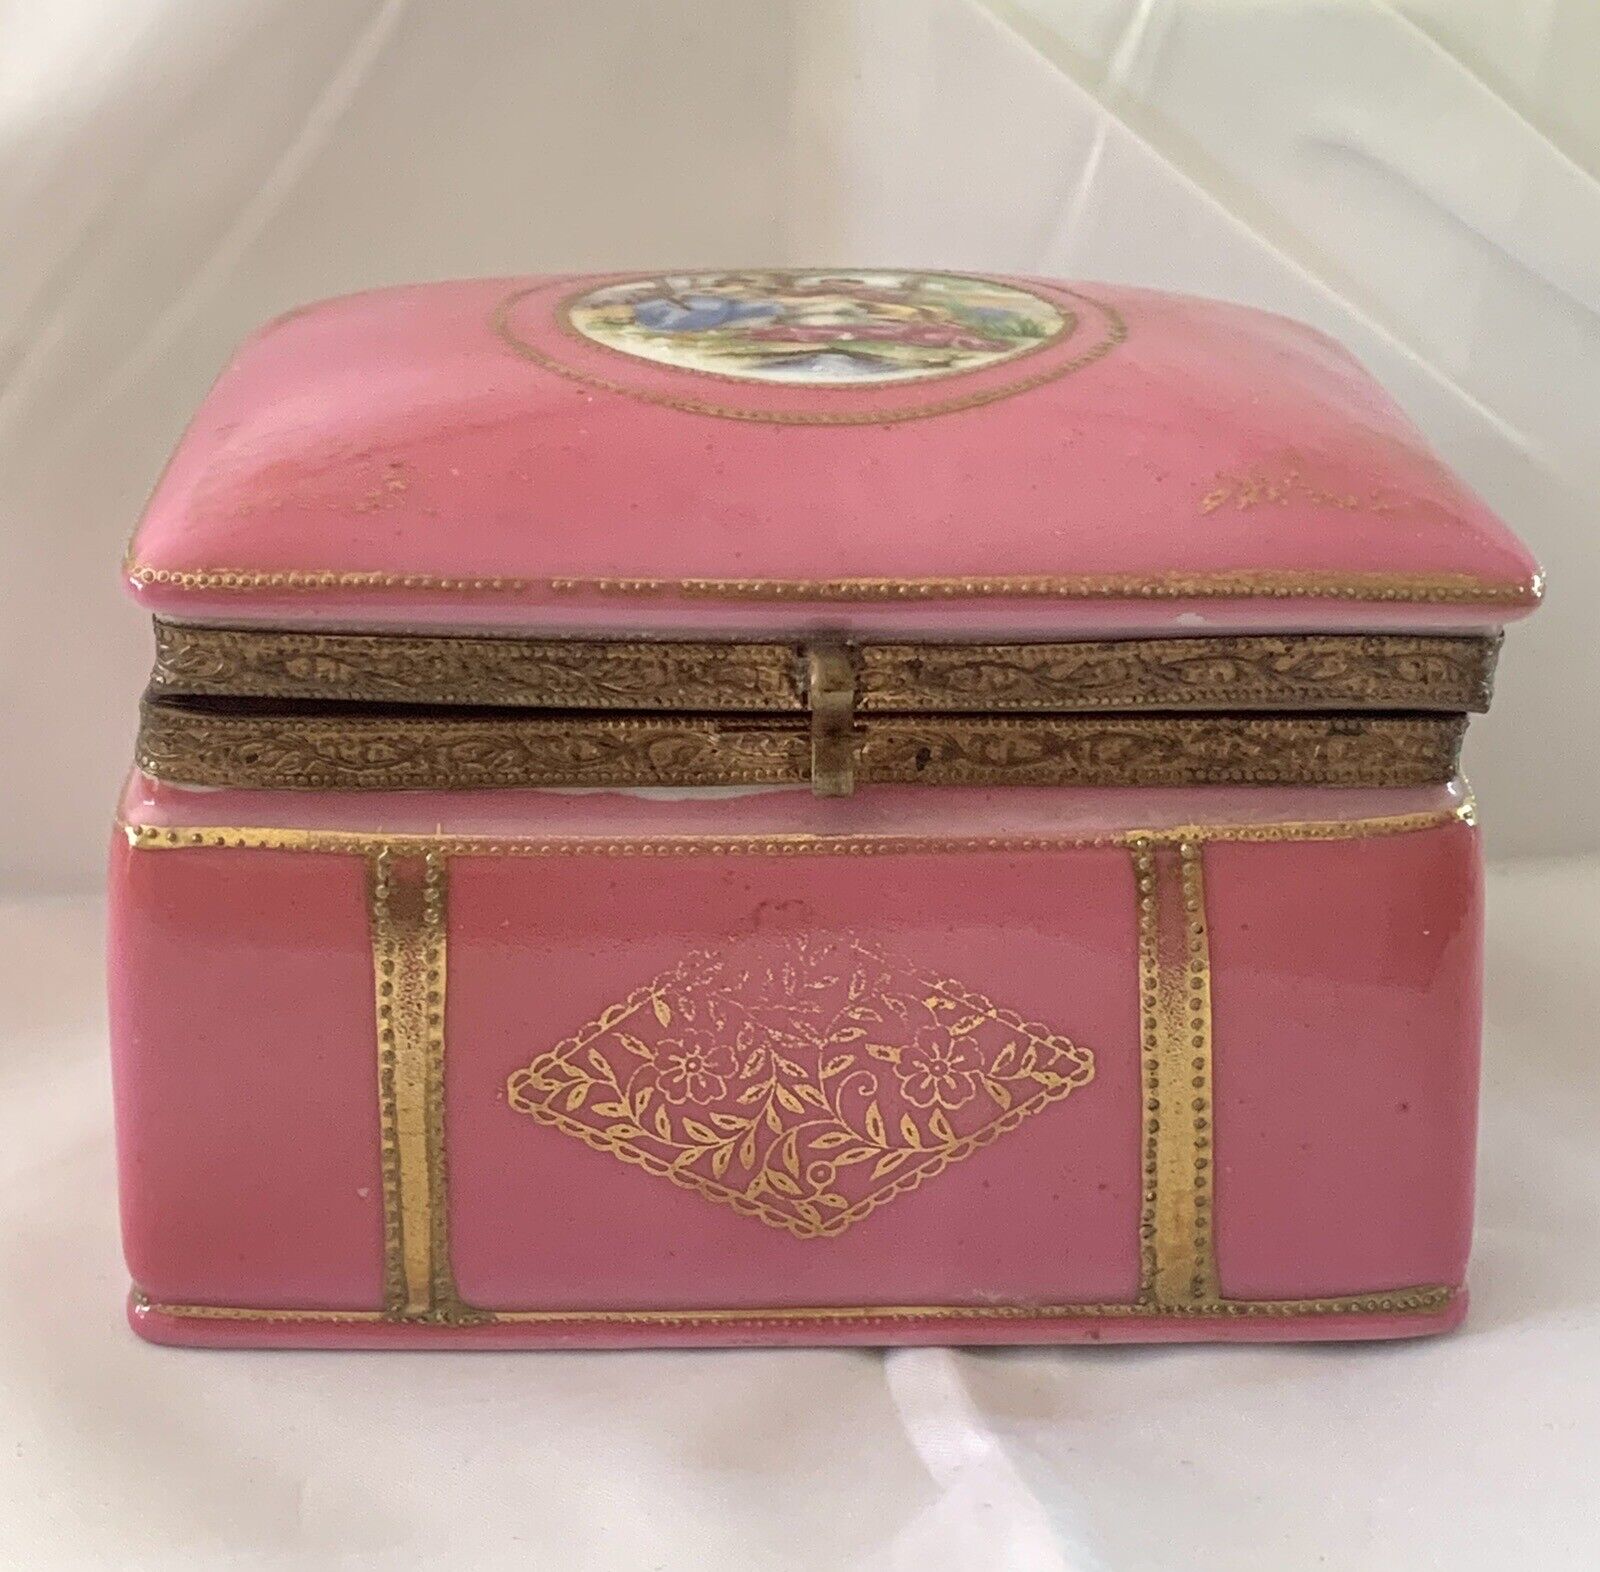 VINTAGE PINK PORCELAIN HINGED DRESSER JEWELRY BOX CASKET GILT METAL FRAME 4”x3”